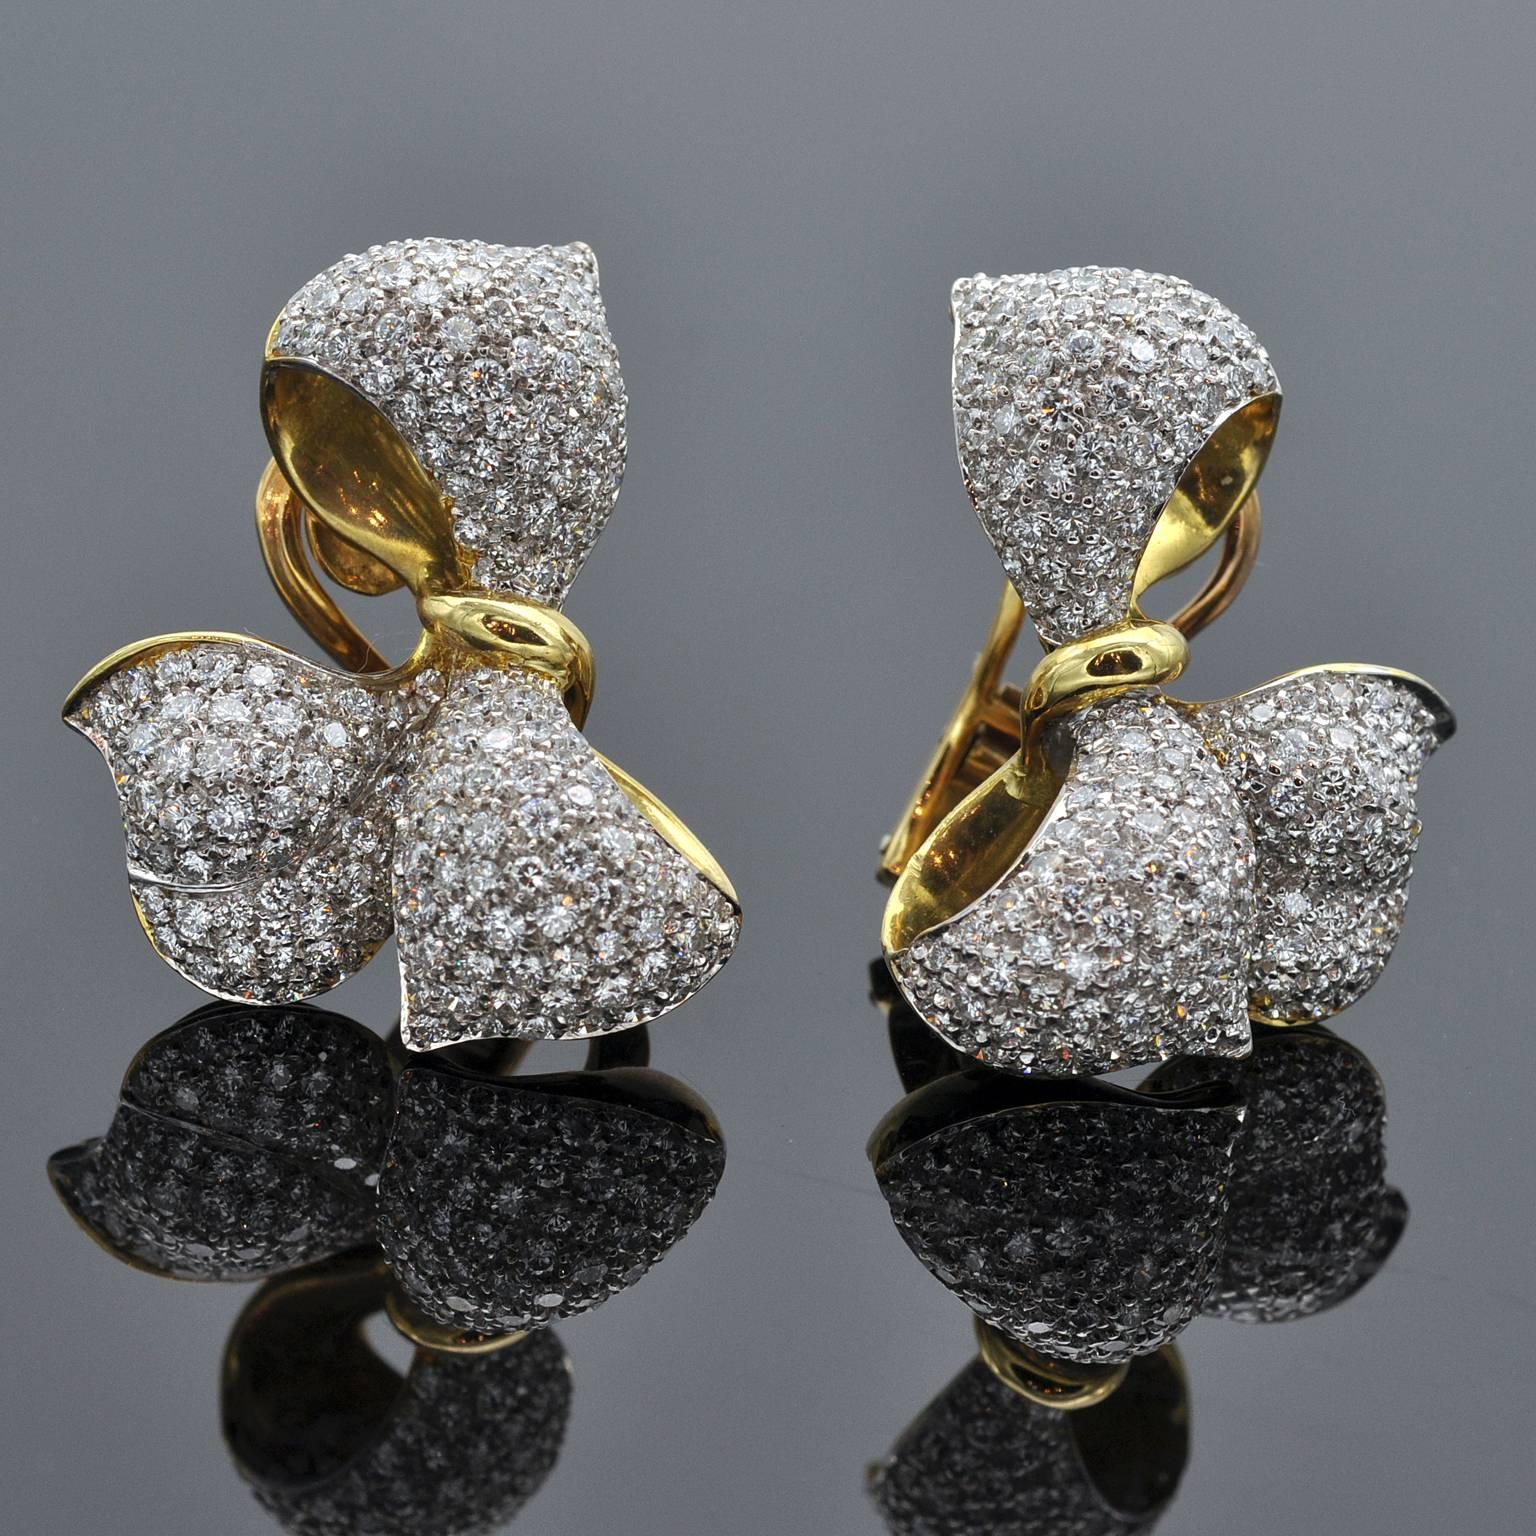 Magnifique Eleg en forme de noeud élégant serti de 5,26 carats de diamants blancs taillés en brillant ( G VS ).
La fabrication est excellente. 

S'associe parfaitement à la bague assortie Ref : LU47232880723


